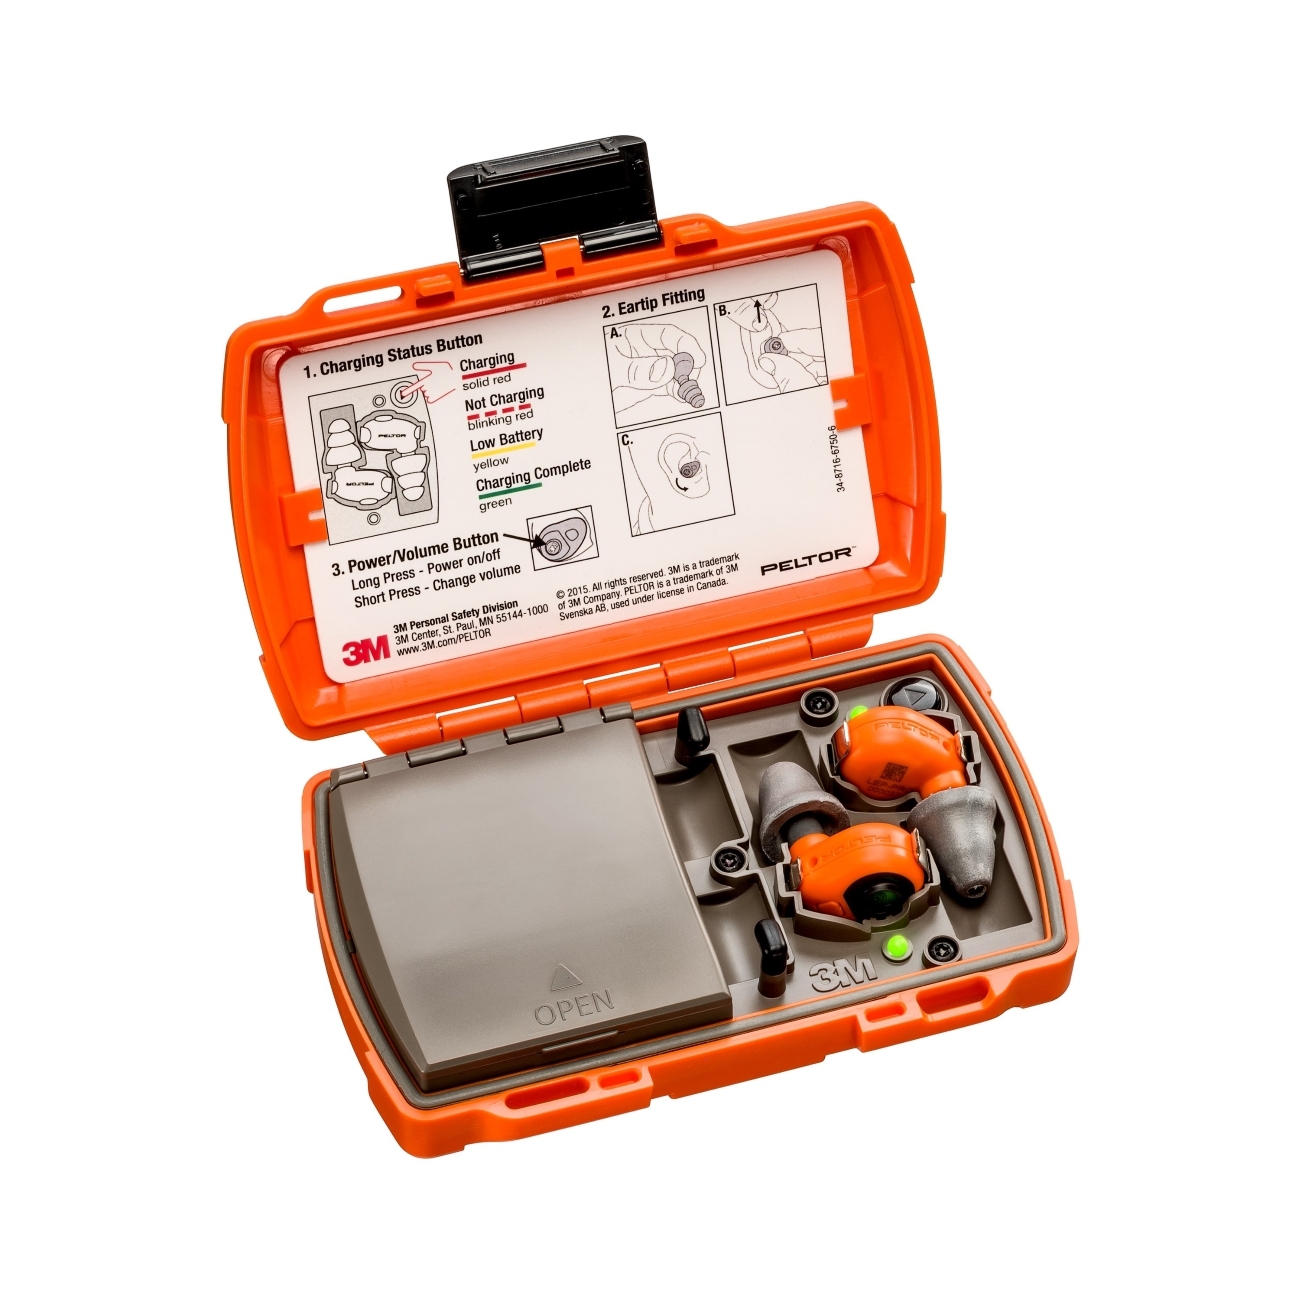 3M Peltor LEP-200 EU orange mit zusätzlicher Antenne für den schnurlosen Empfang von Audiosignalen, Set: Stöpsel und Ladestation (mit geschlossenem Deckel und USB-Anschlüssen) sind IP-54 eingestuft und wasserfest (30 Min. Eintauchen bis 1m Tiefe)